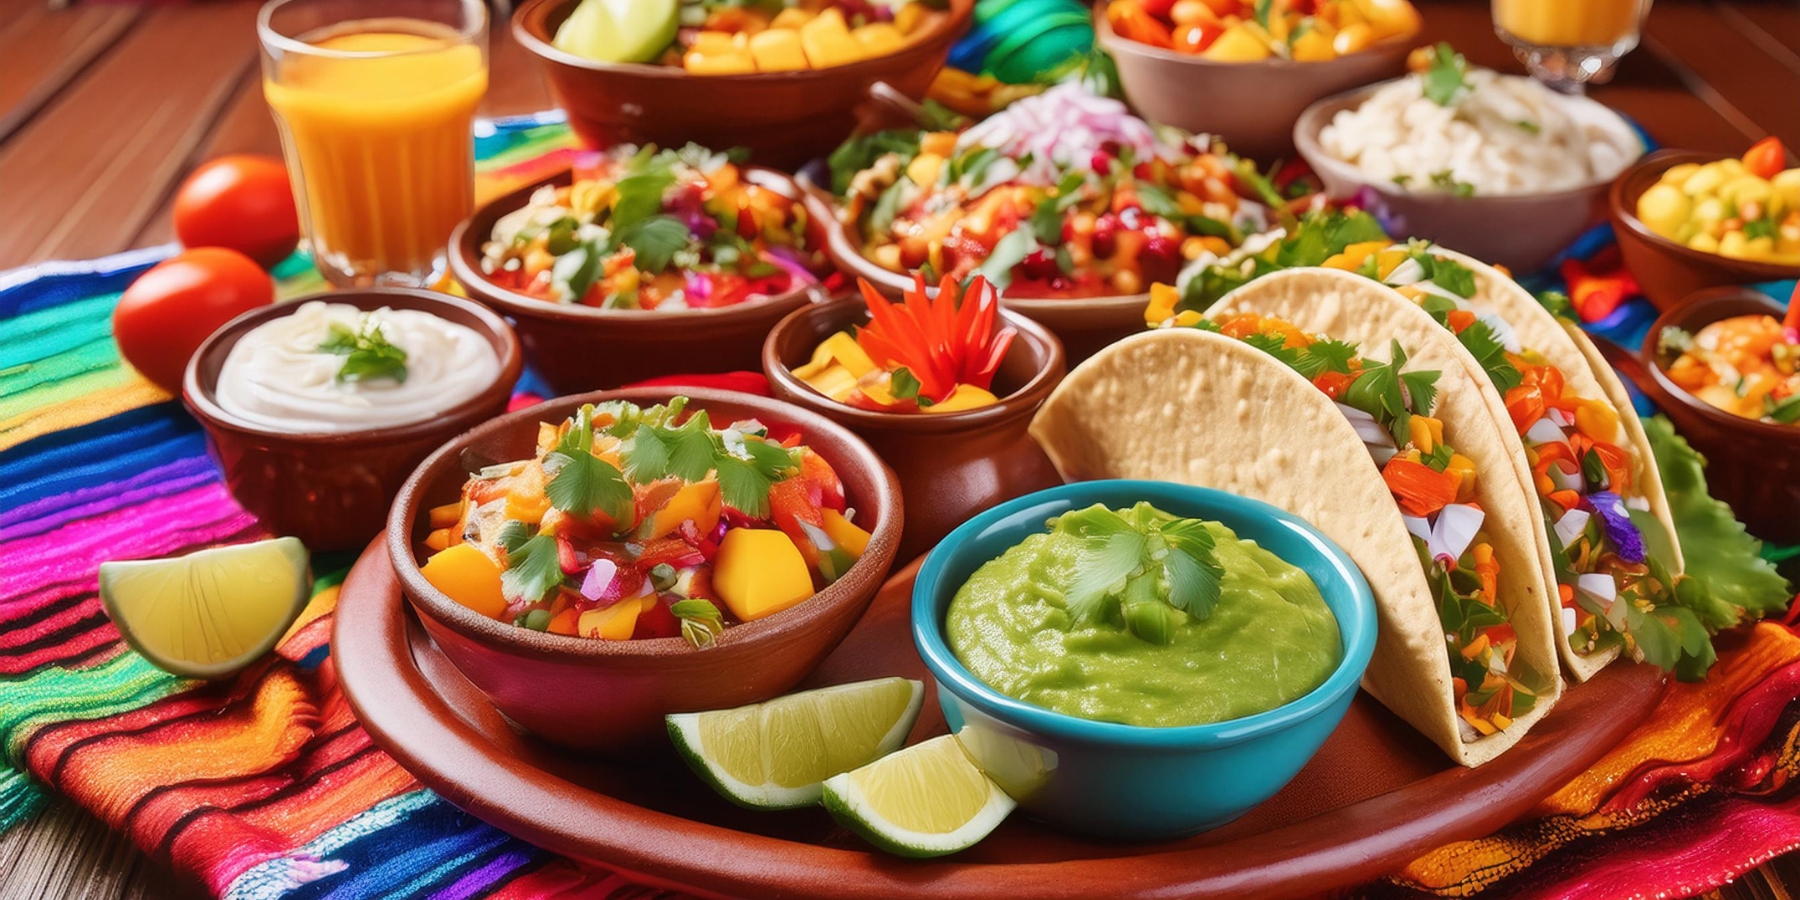 A Cinco de Mayo feast of tacos, salsa, and guacamole